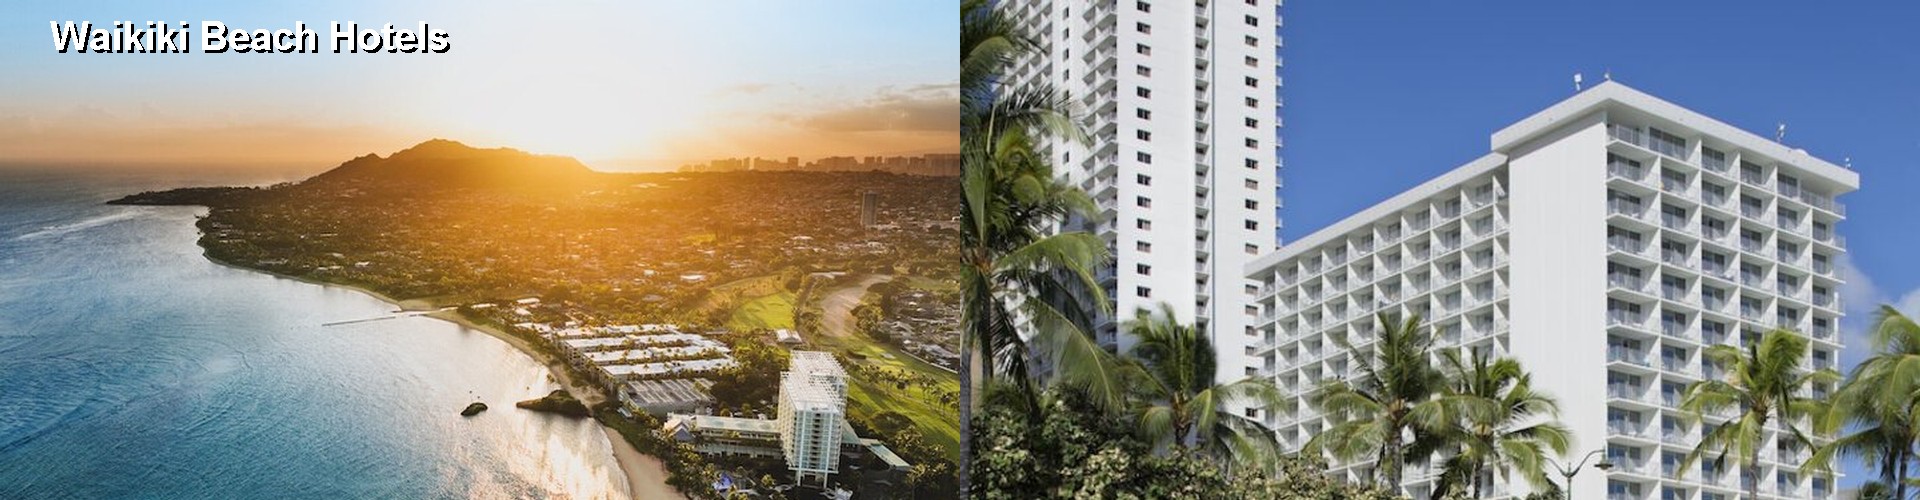 5 Best Hotels near Waikiki Beach